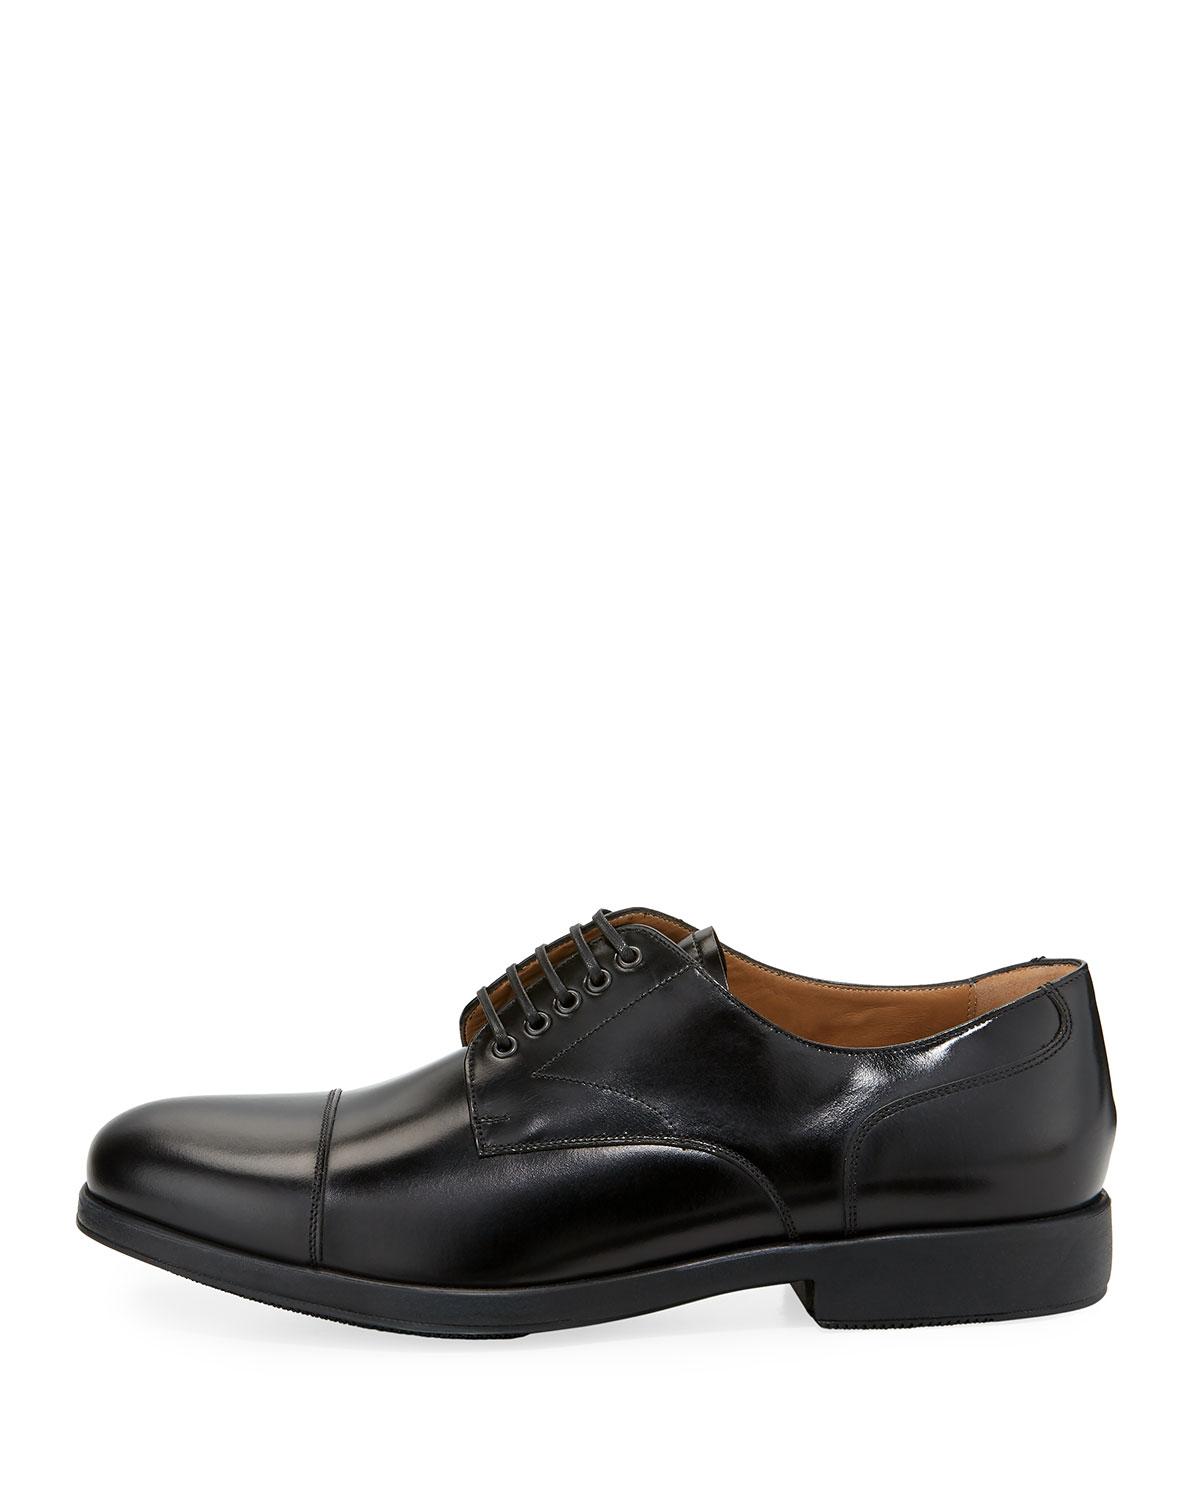 Lyst - Ferragamo Laced Slip-on Rubber Sole Dress Shoe in Black for Men